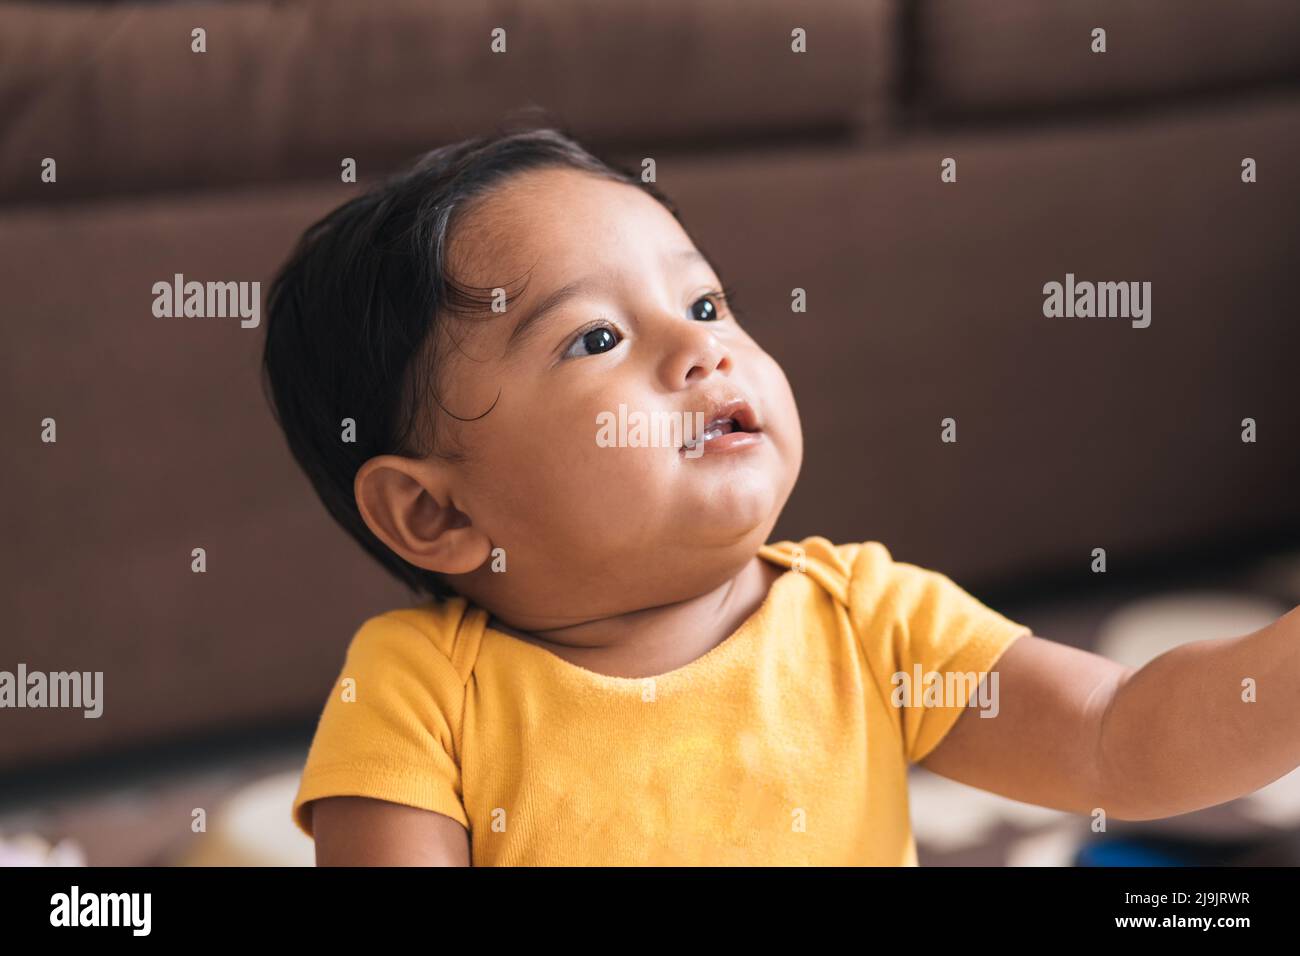 bebé sentado en el suelo mirando hacia arriba Foto de stock